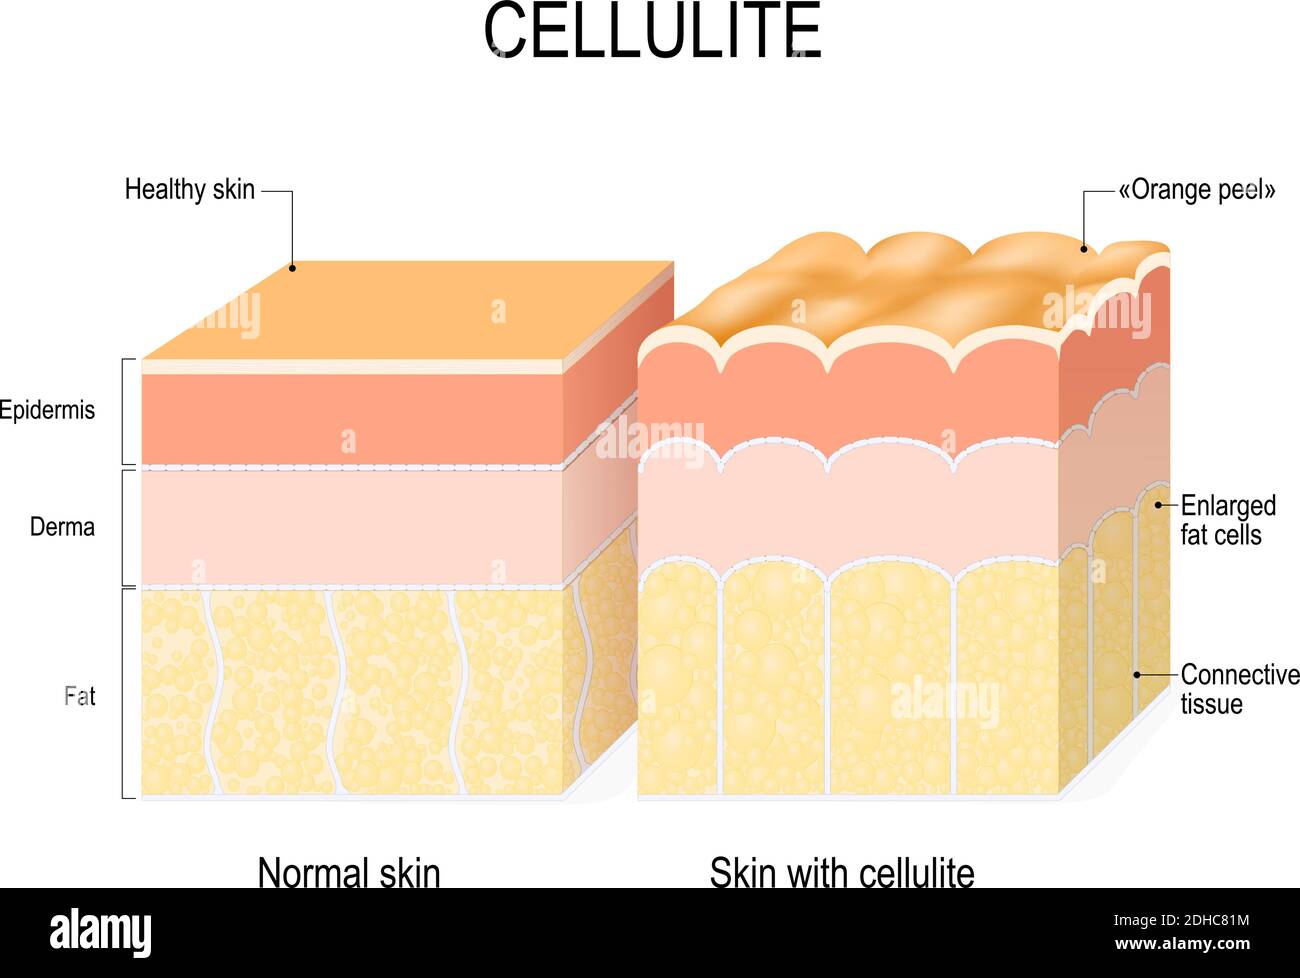 cellulite. Sezione trasversale di una pelle sana e buccia d'arancia. Illustrazione vettoriale per uso medico, educativo, biologicico e scientifico. Cura della pelle Illustrazione Vettoriale